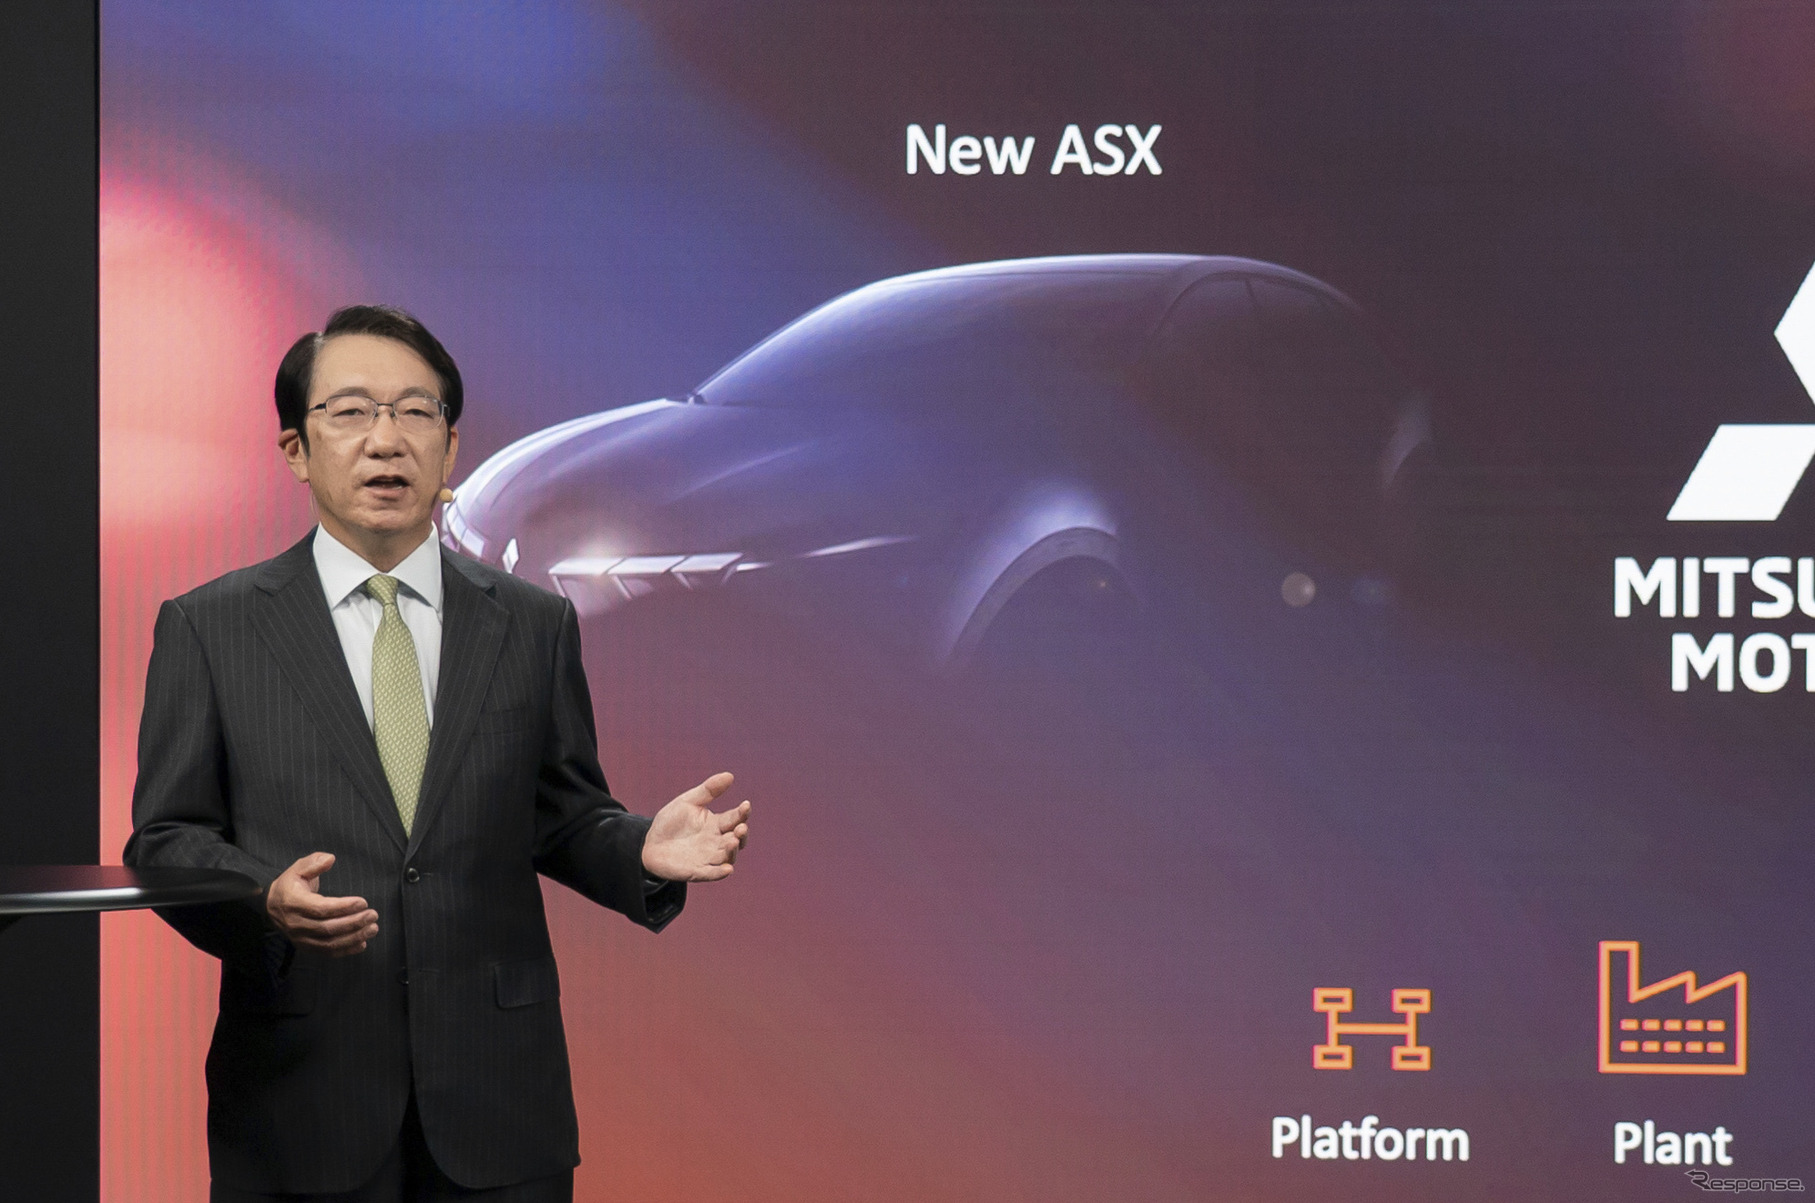 三菱の新型『ASX』がルノーの最量販車種をベースにすることが発表された。写真は三菱自動車の加藤隆雄CEOとASXのデザインスケッチ